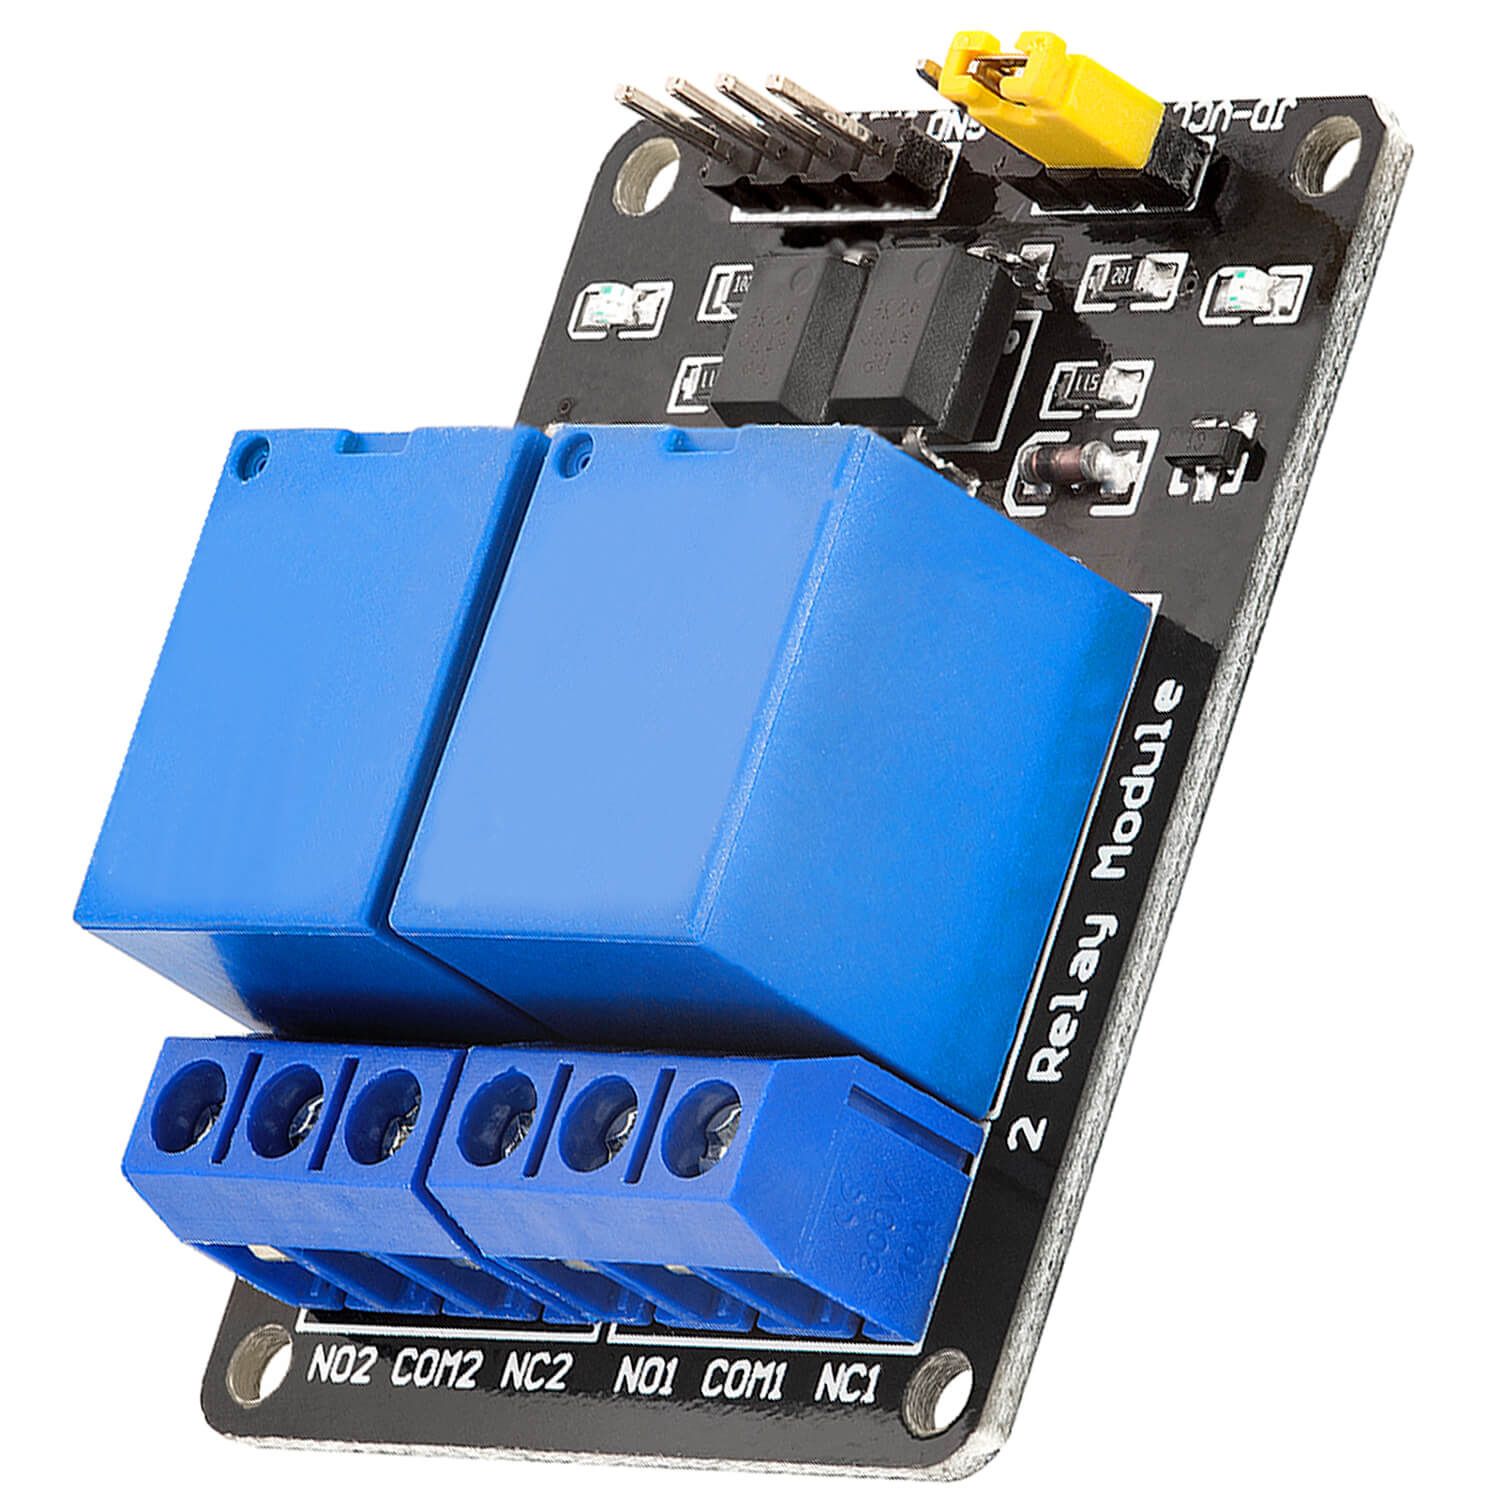 Module relais 5v pour Arduino - Otronic